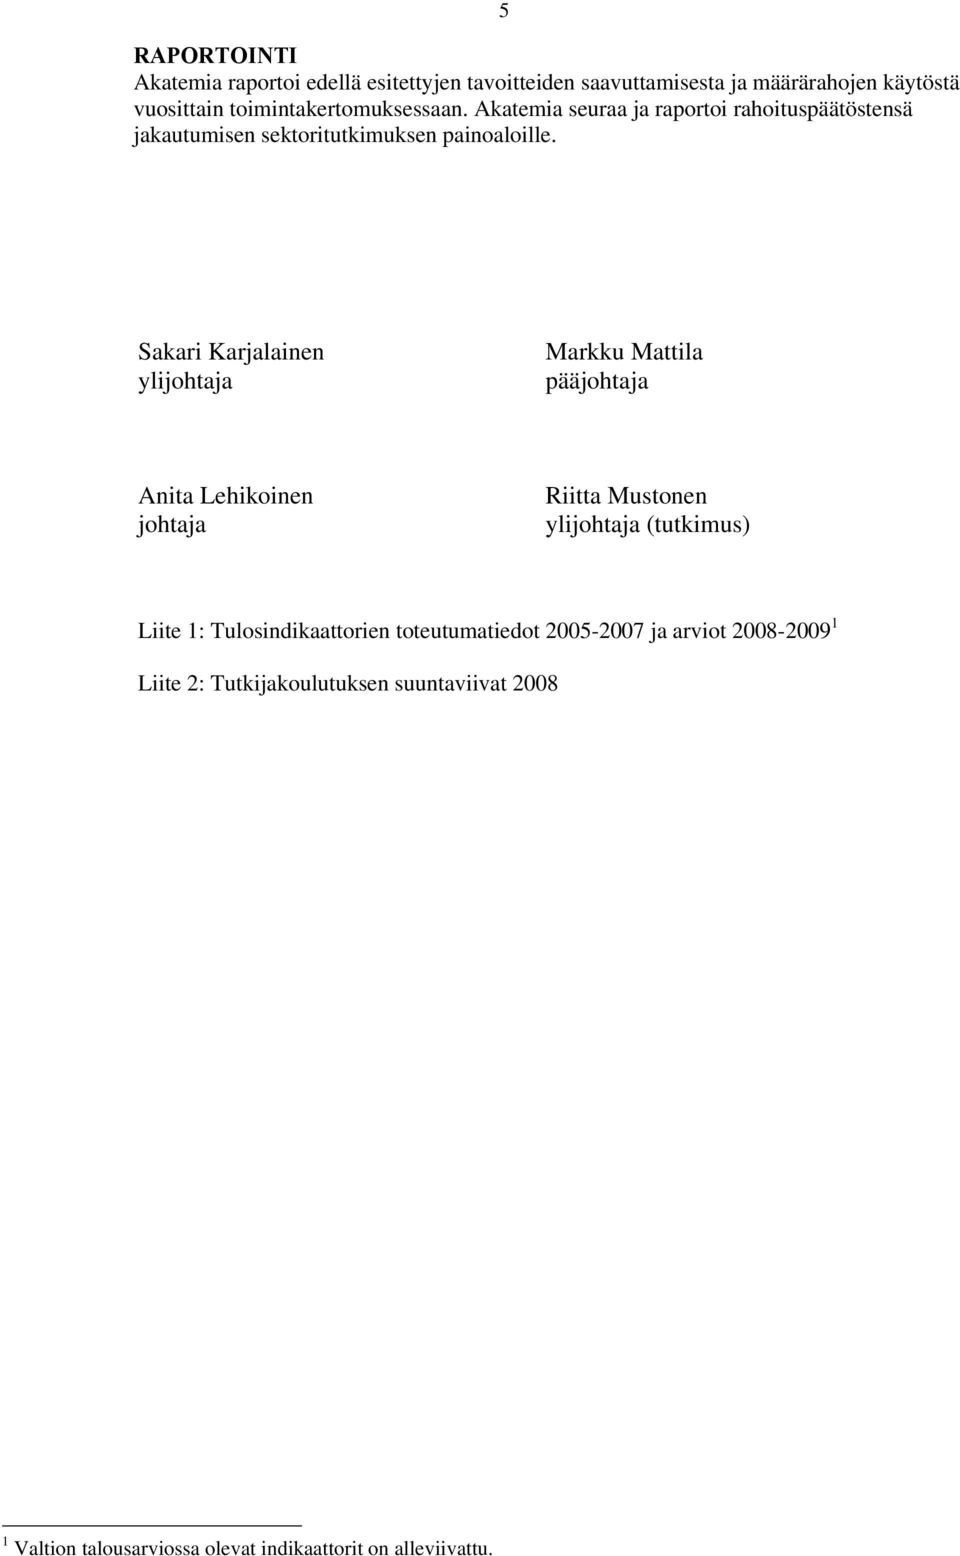 Sakari Karjalainen ylijohtaja Markku Mattila pääjohtaja Anita Lehikoinen johtaja Riitta Mustonen ylijohtaja (tutkimus) Liite 1: